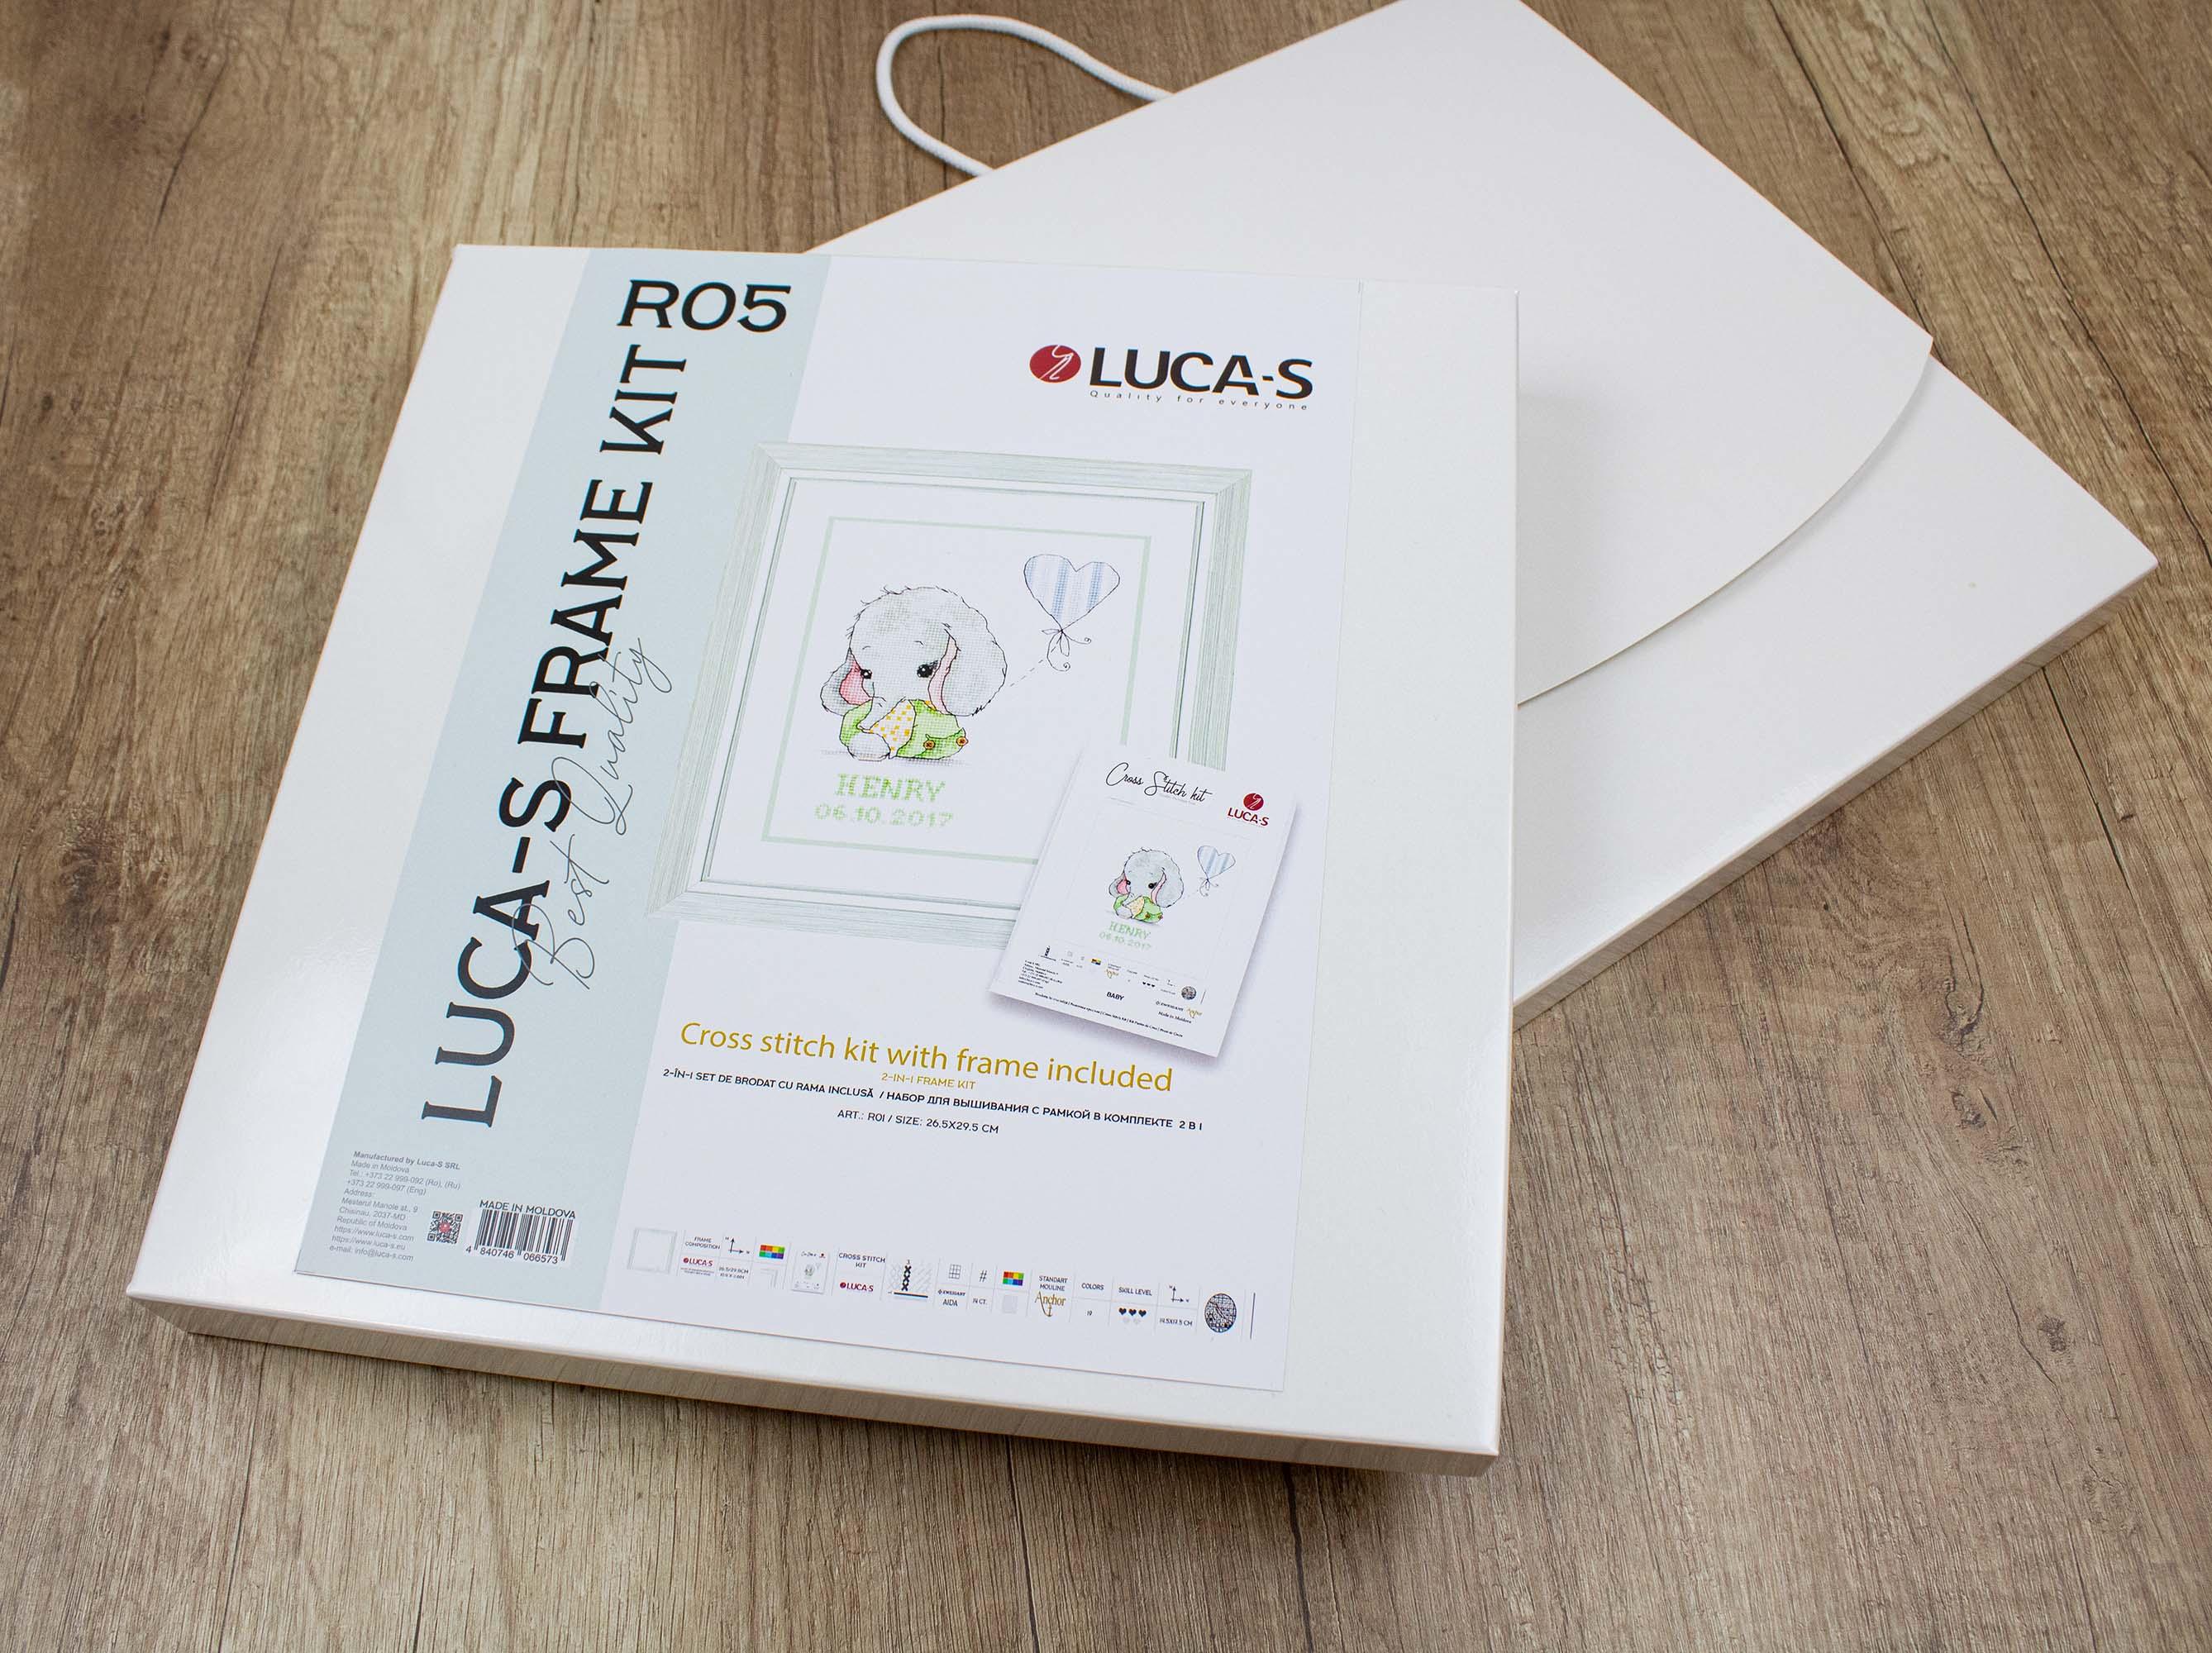 Luca-S Frame Kit - R05 - Luca-S 